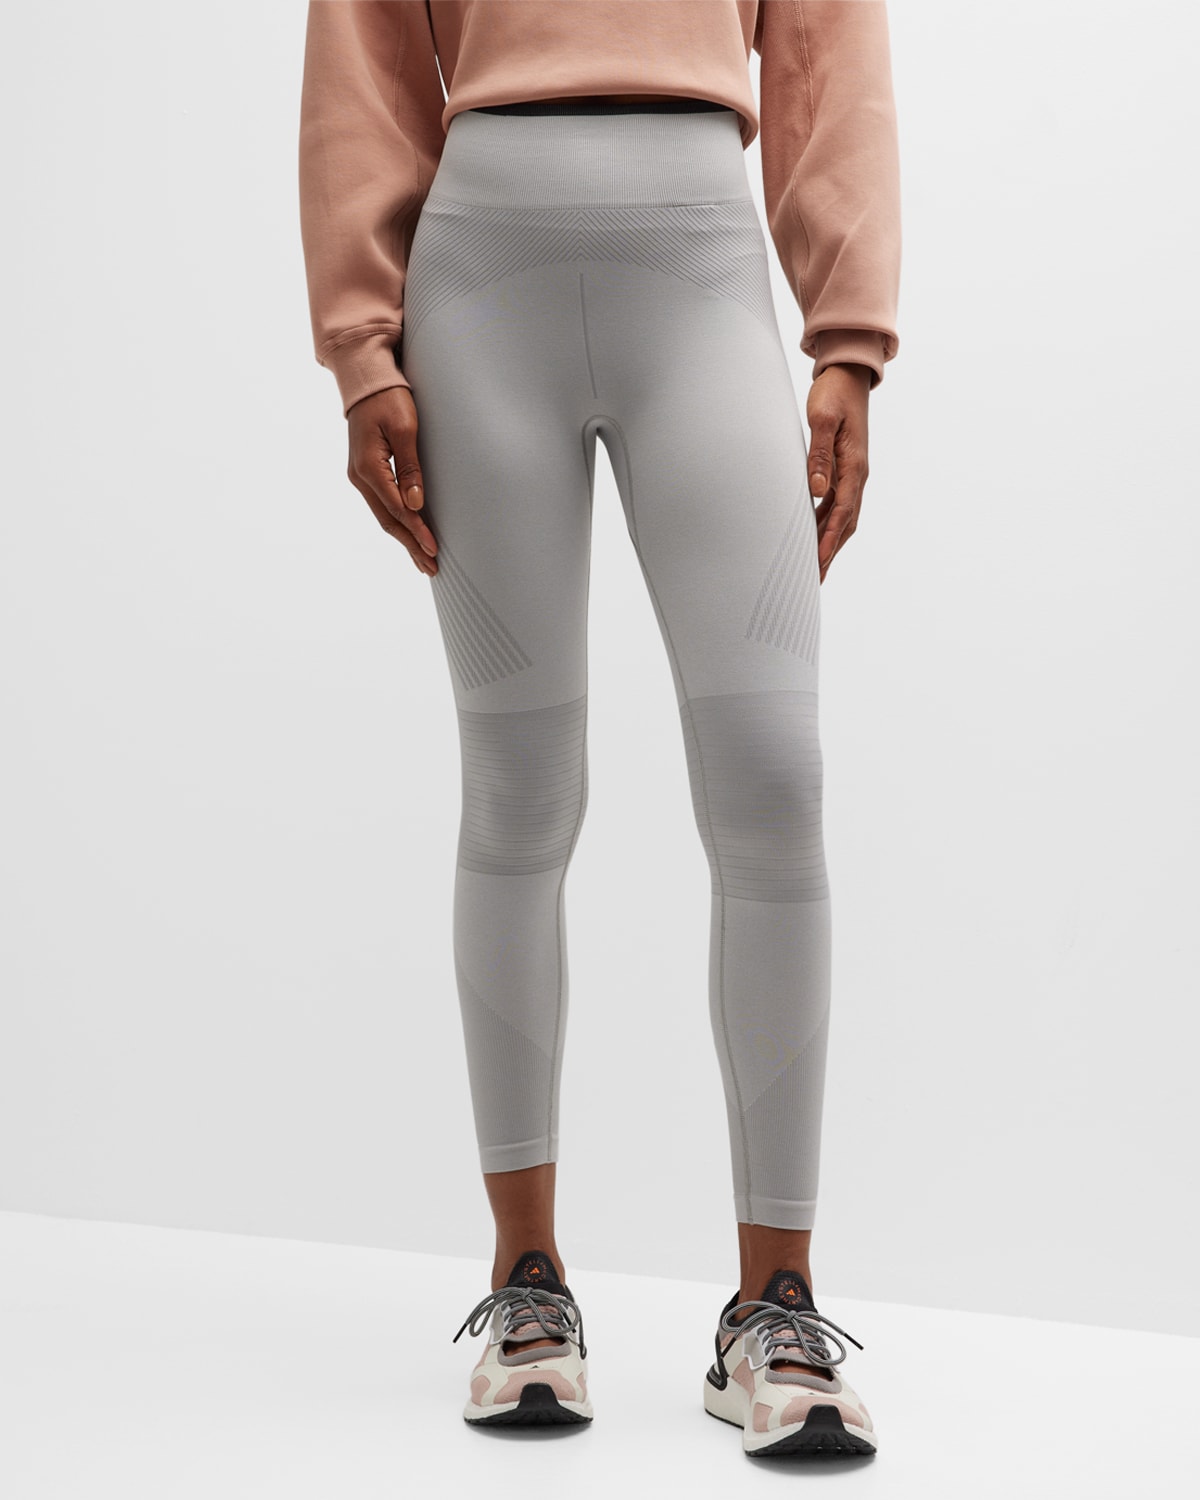 Adidas By Stella Mccartney Truestrength Seamless Yoga Tights In Mgsogrwhiteblack